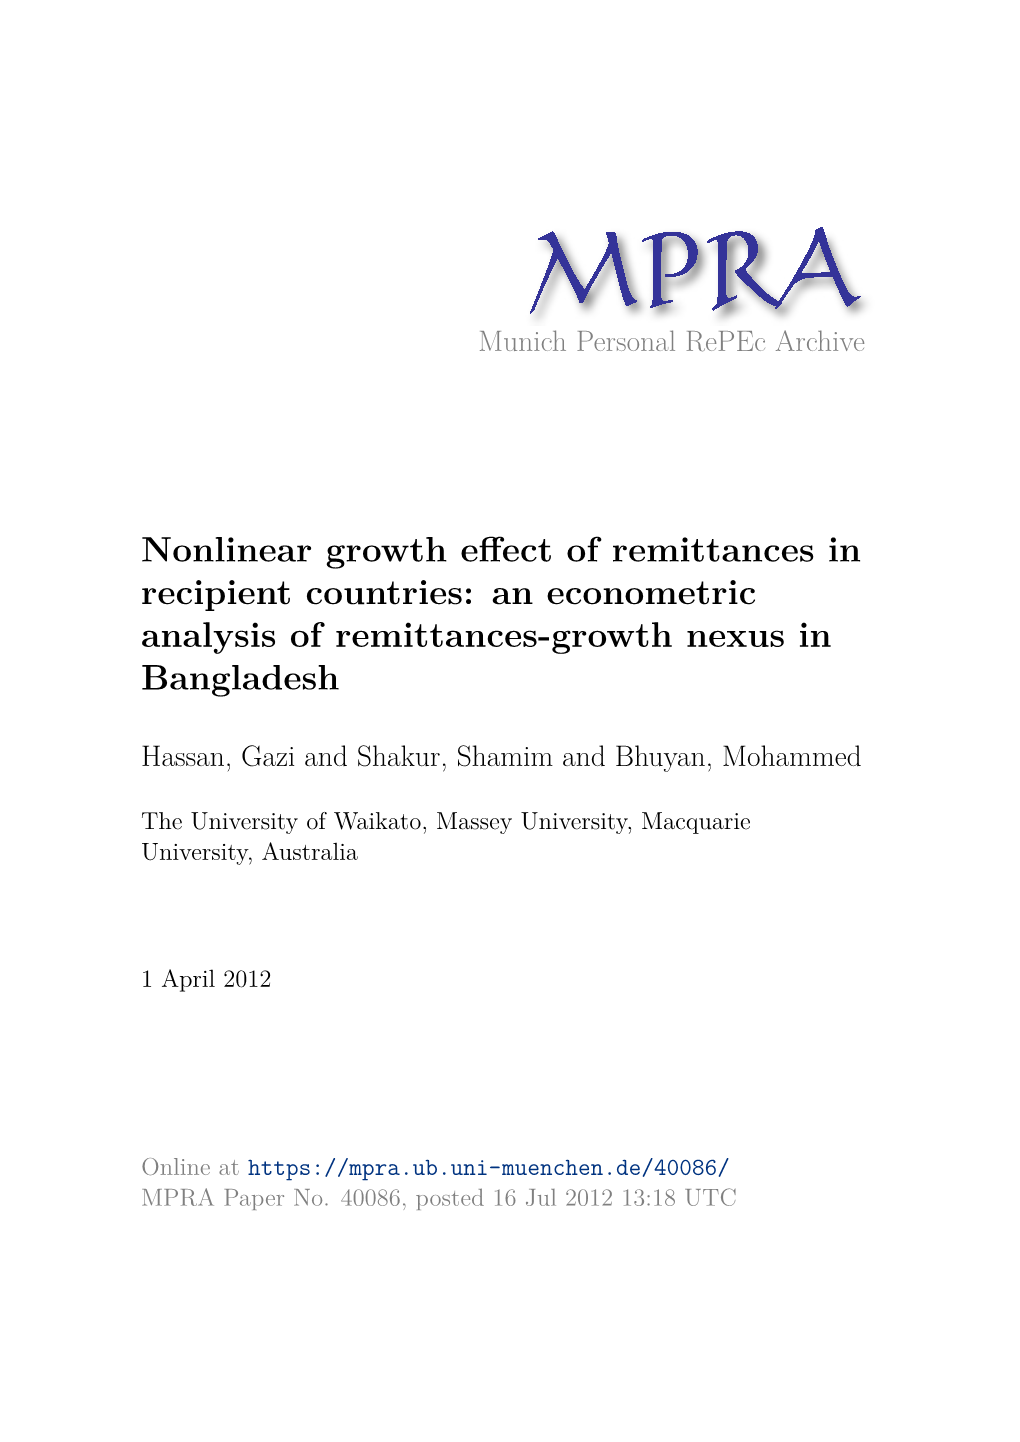 Remittances Flows in Bangladesh